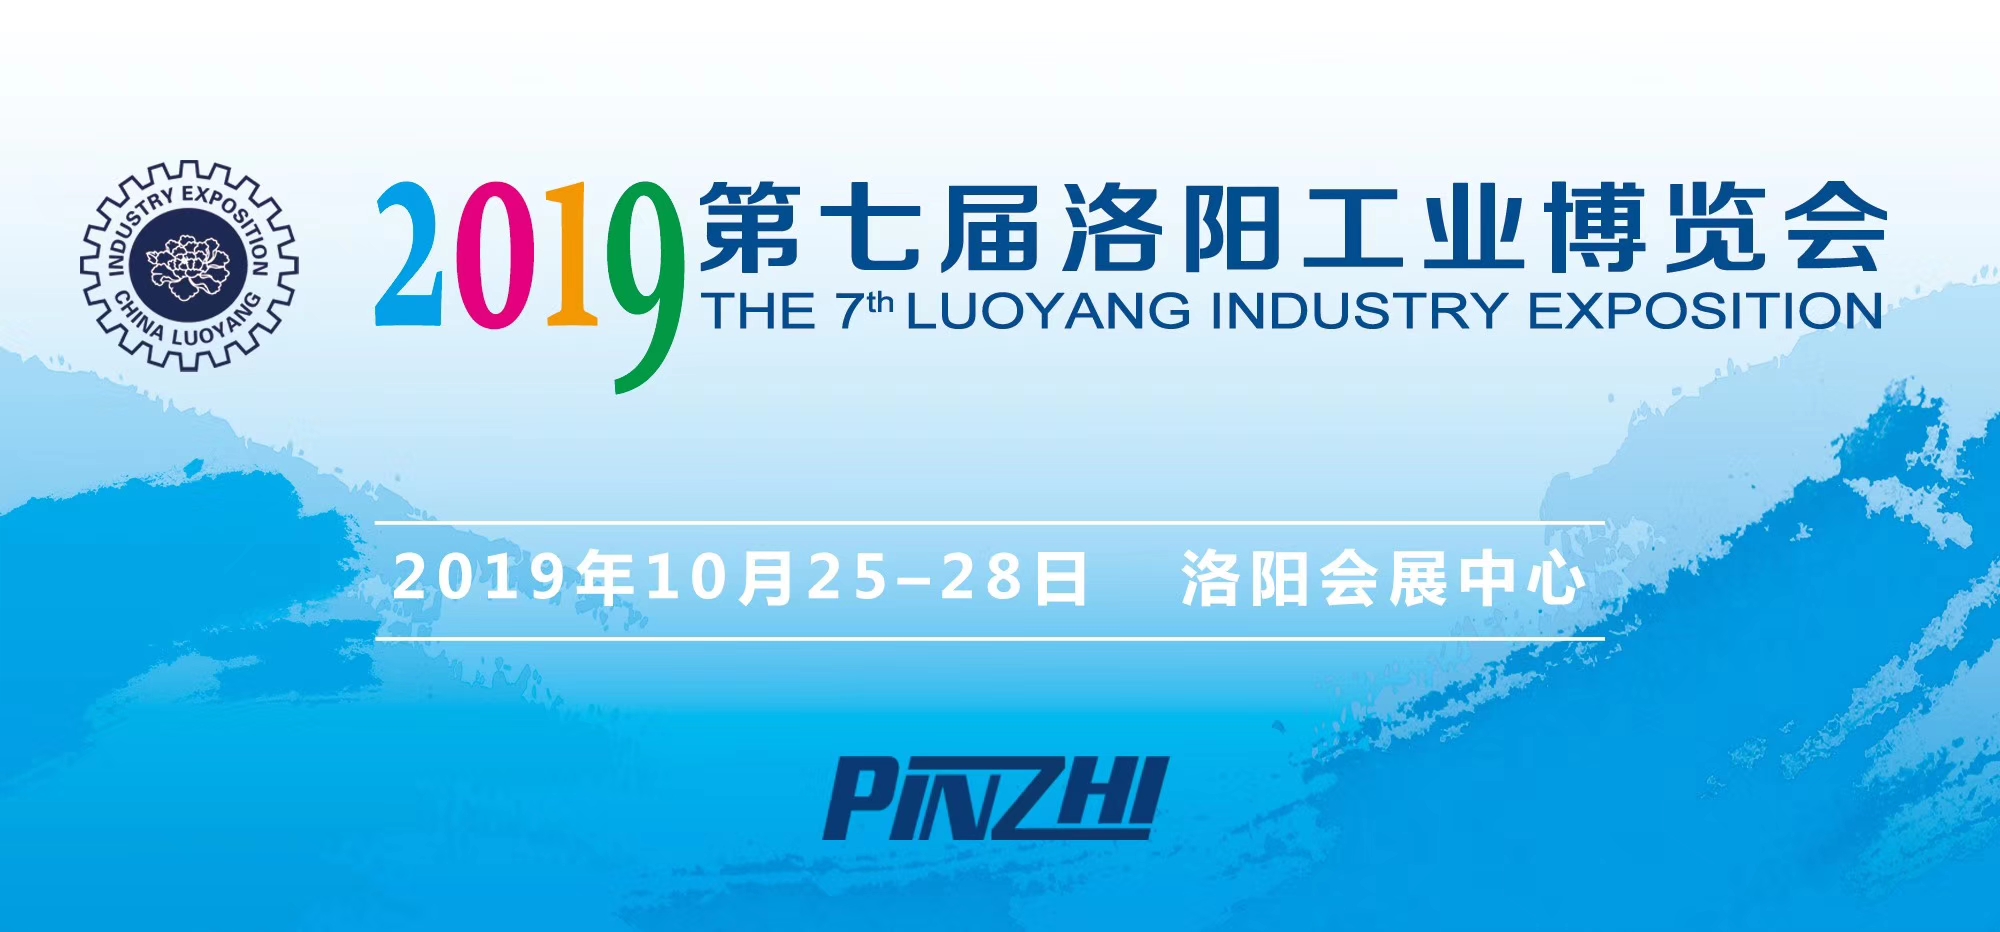 洛阳信成将携部分机电产品--亮相2019第七届洛阳工业博览会